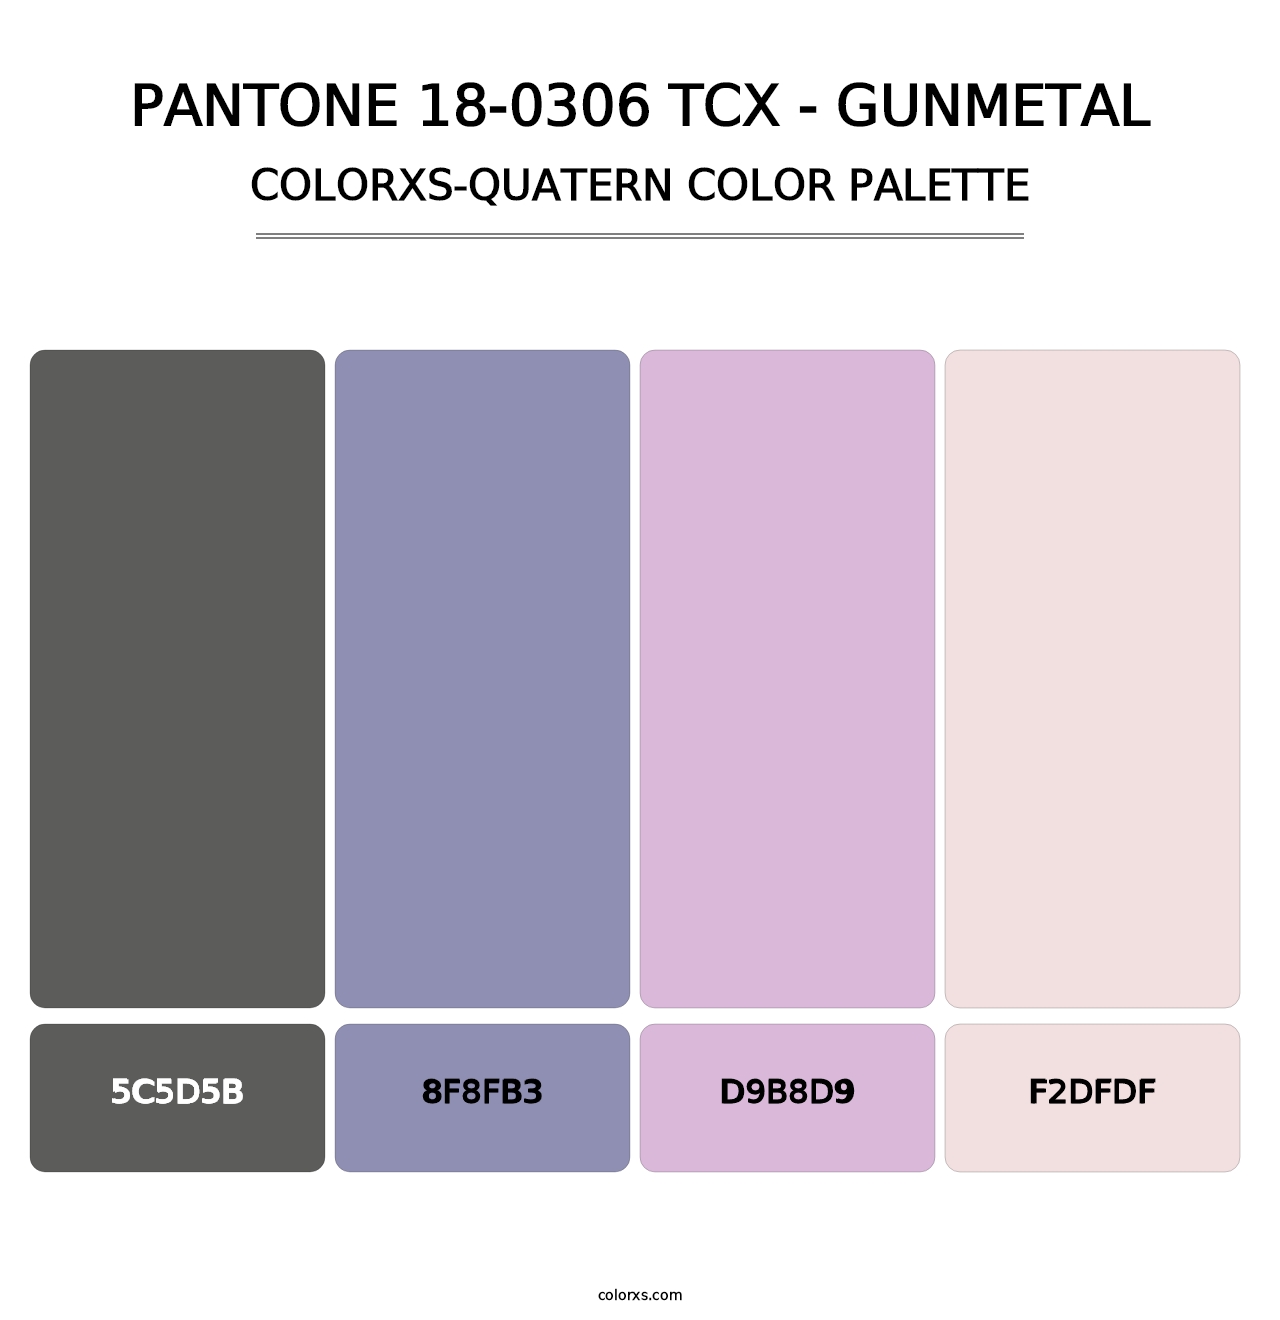 PANTONE 18-0306 TCX - Gunmetal - Colorxs Quatern Palette